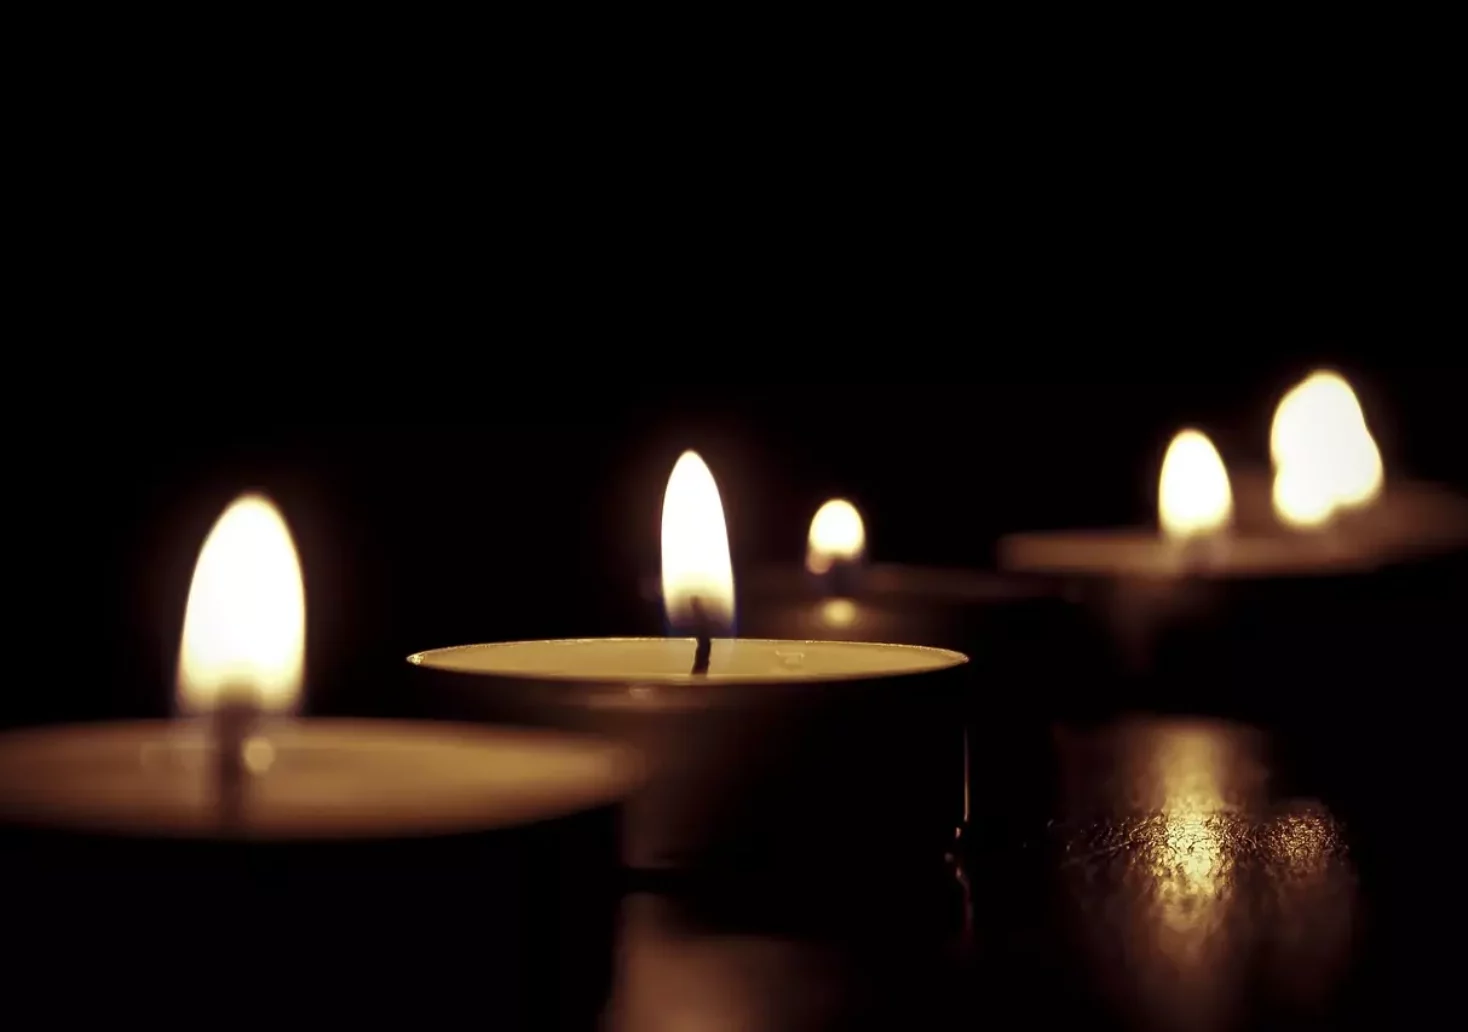 Bild auf 5min.at zeigt brennende Kerzen.